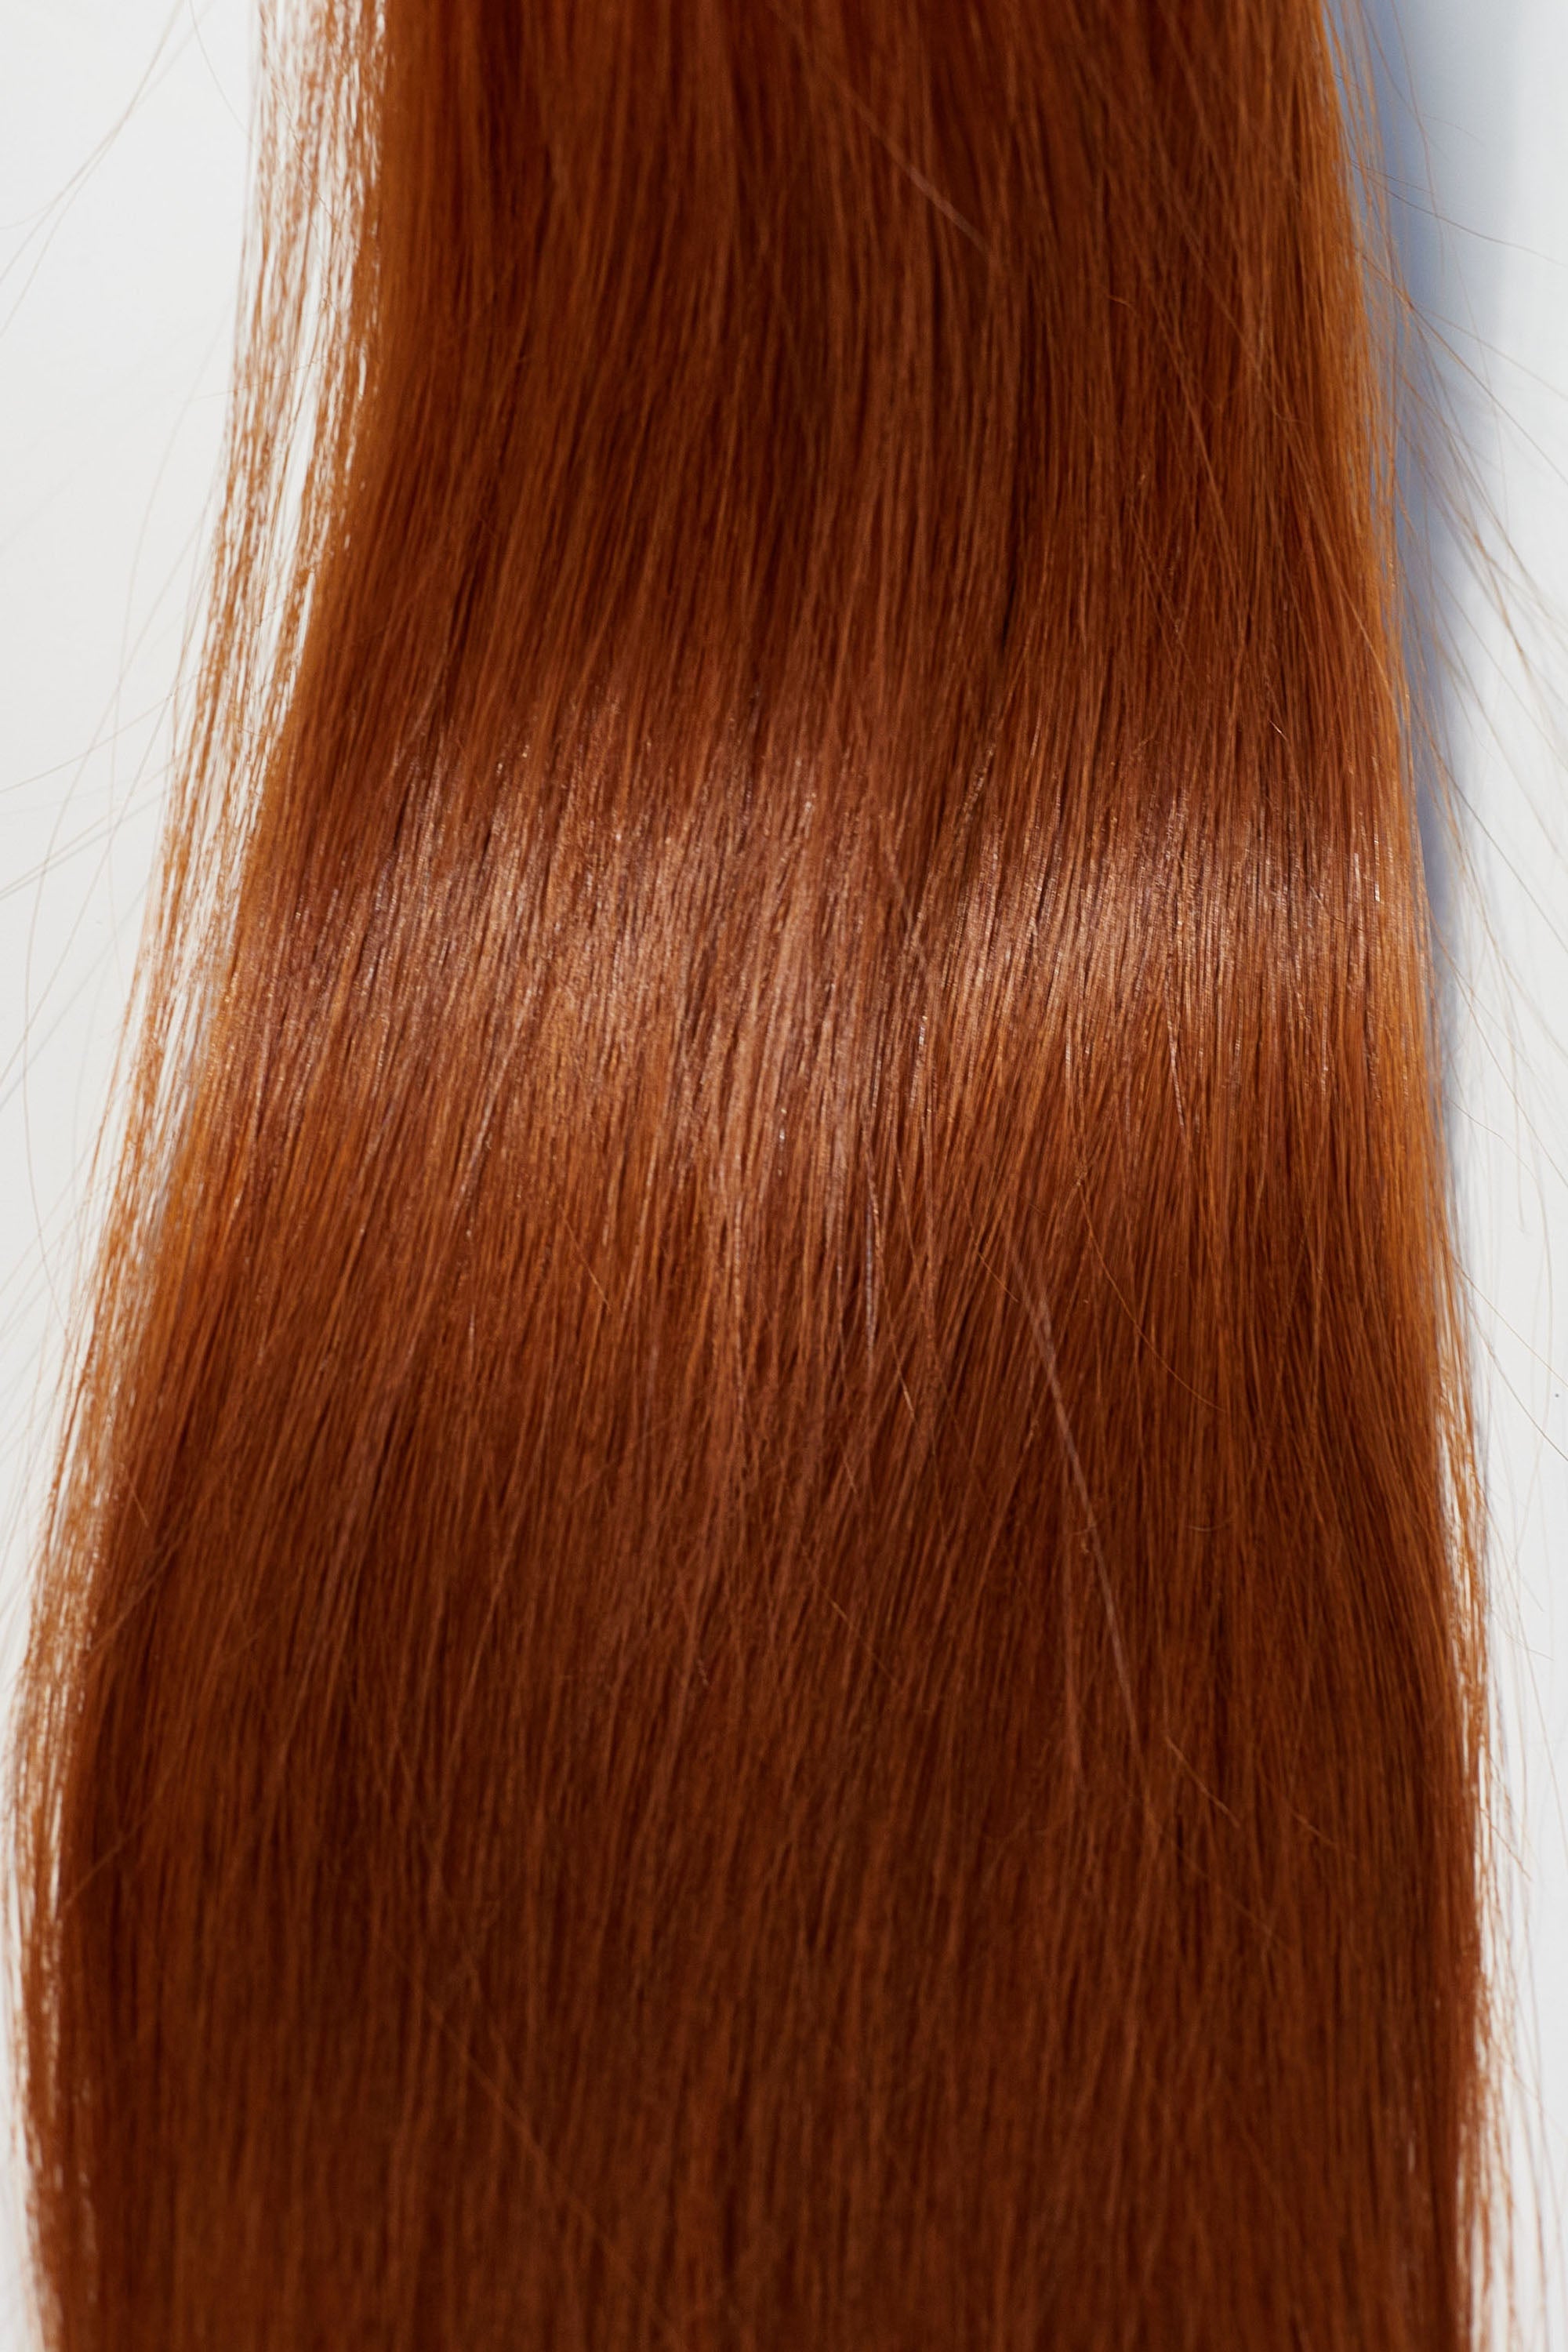 Behair professional Bulk hair "Premium" 24" (60cm) Natural Straight Brilliant Copper #130 - 25g hair extensions